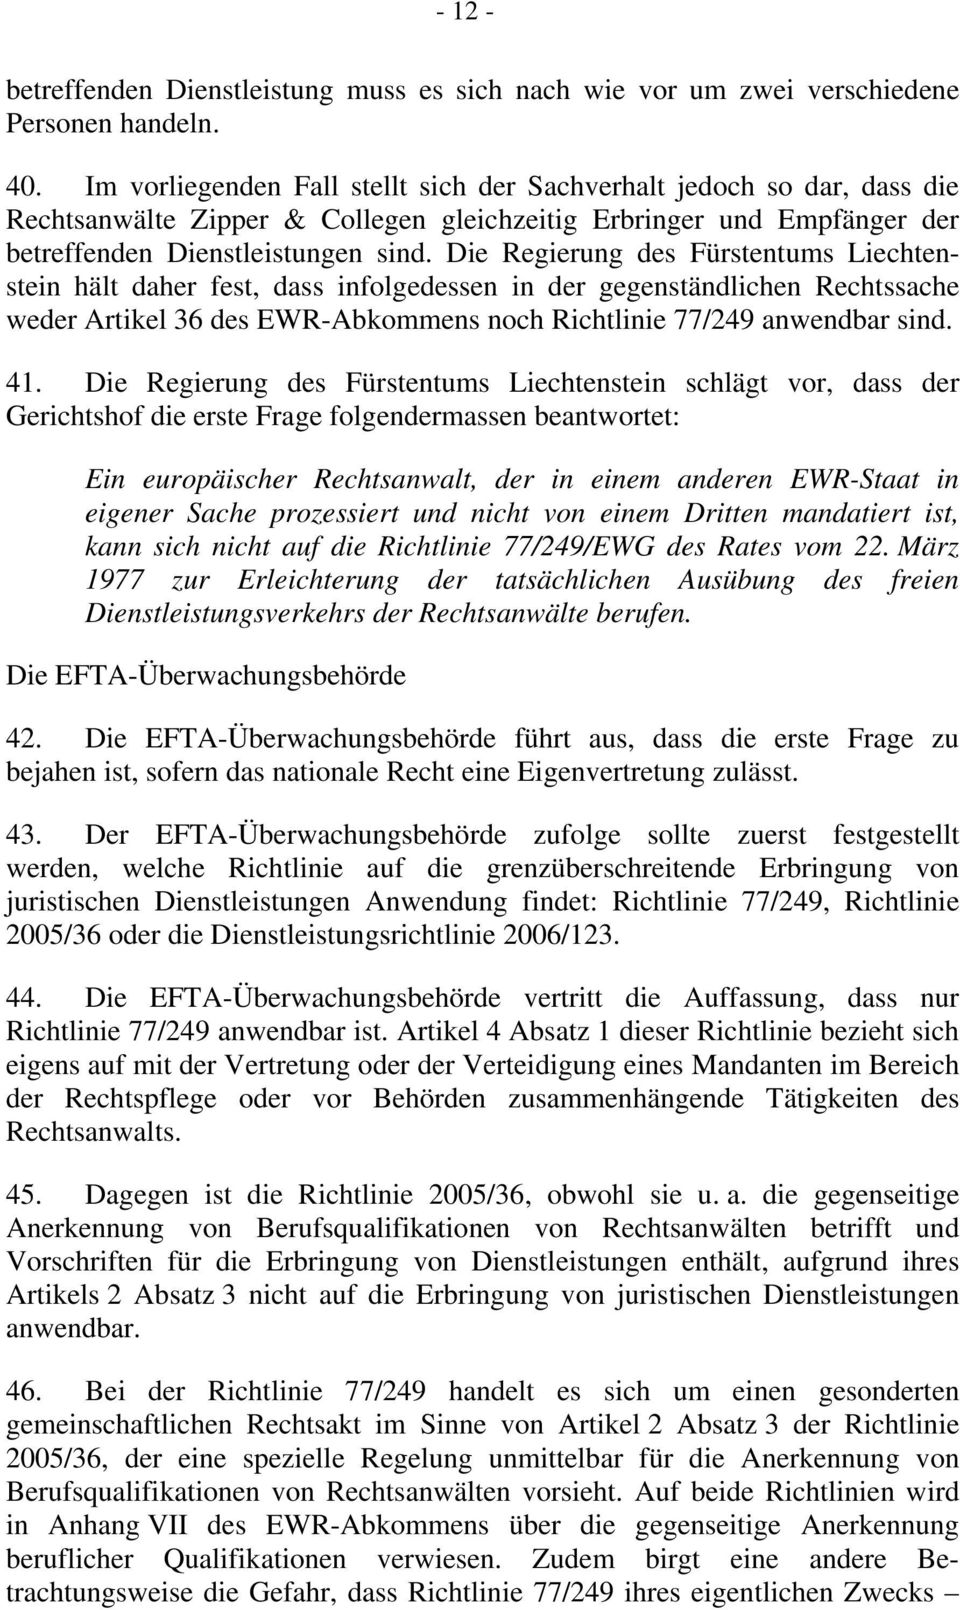 Die Regierung des Fürstentums Liechtenstein hält daher fest, dass infolgedessen in der gegenständlichen Rechtssache weder Artikel 36 des EWR-Abkommens noch Richtlinie 77/249 anwendbar sind. 41.